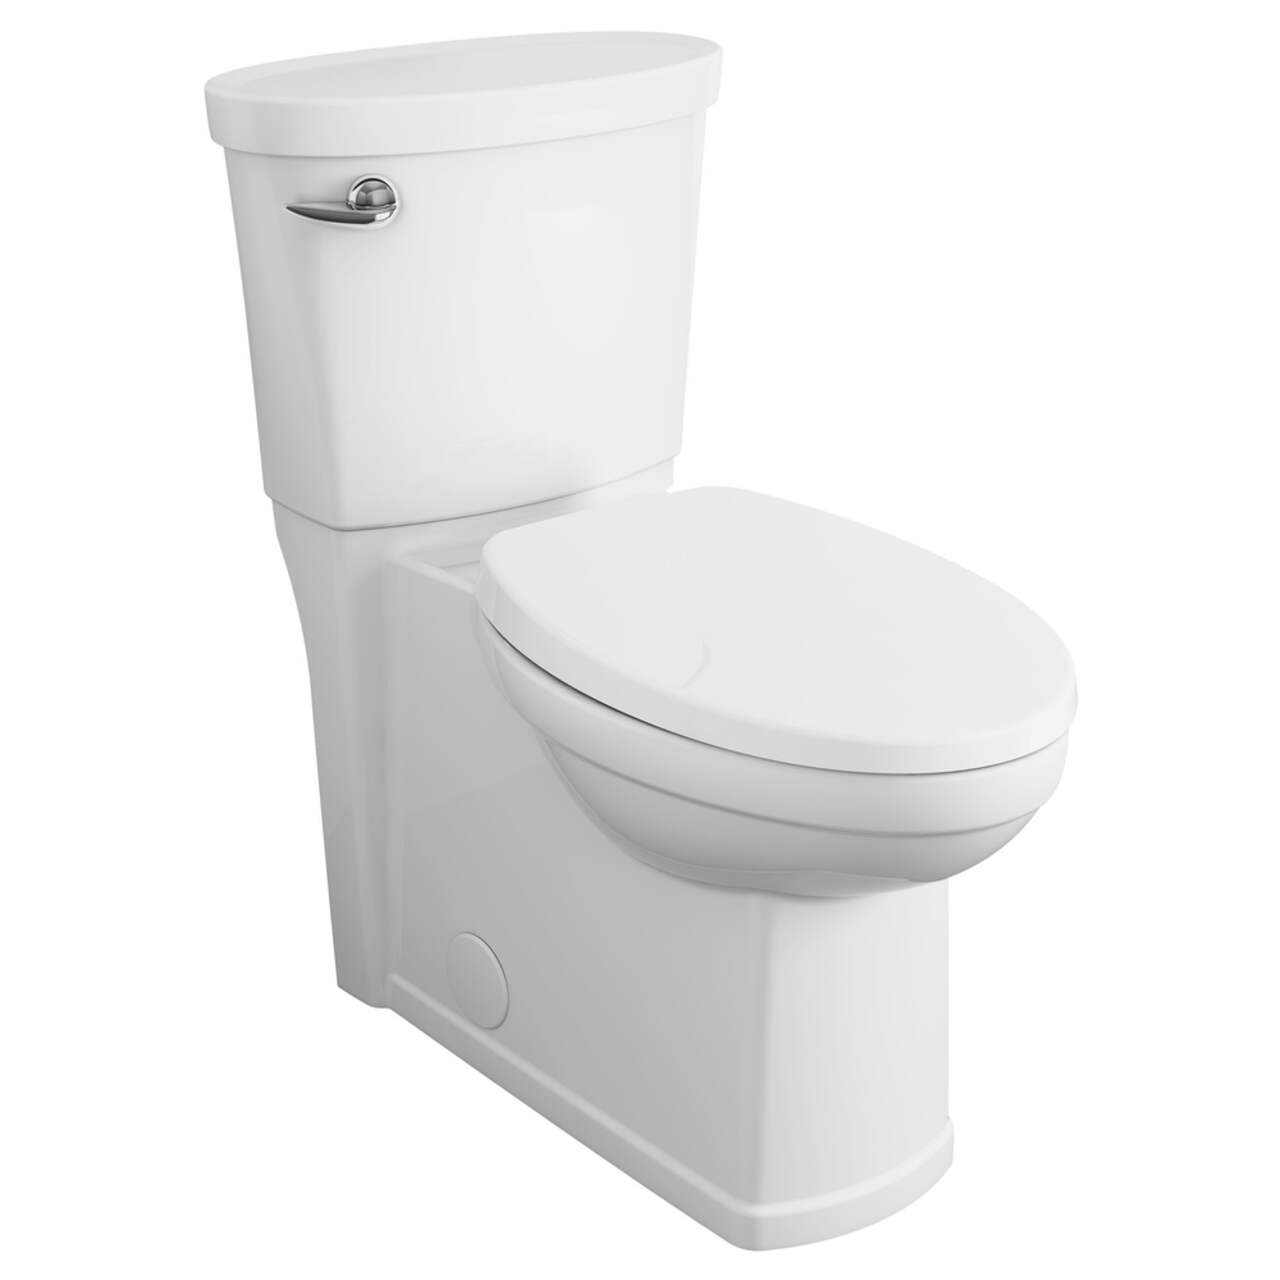 Toilette allongée à chasse d'eau unique American Standard Decor